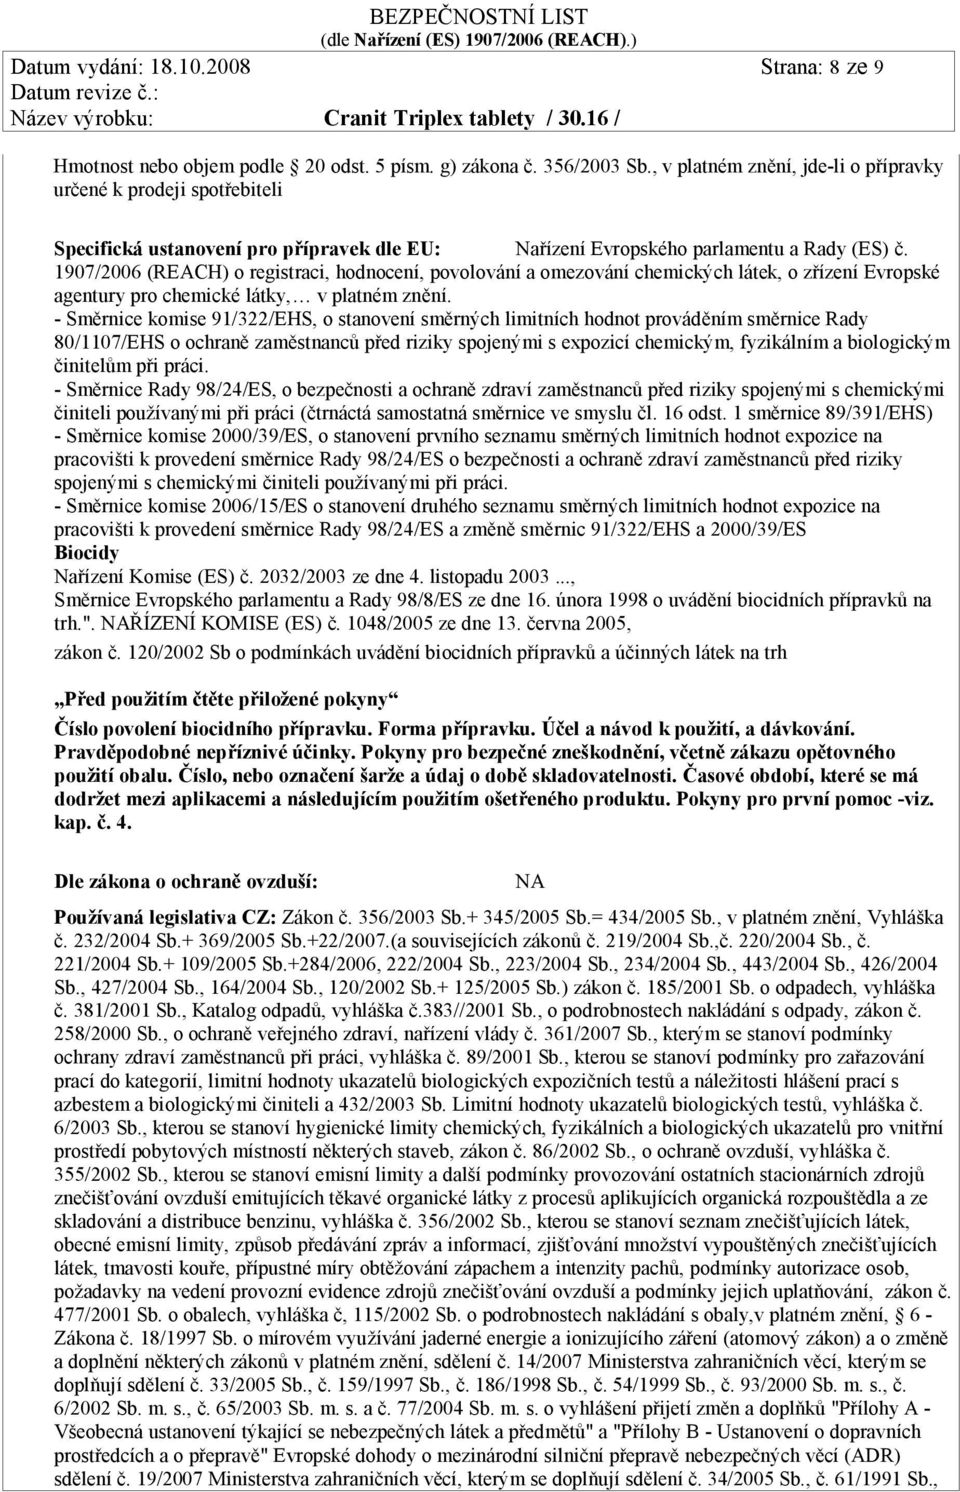 1907/2006 (REACH) o registraci, hodnocení, povolování a omezování chemických látek, o zřízení Evropské agentury pro chemické látky, v platném znění.